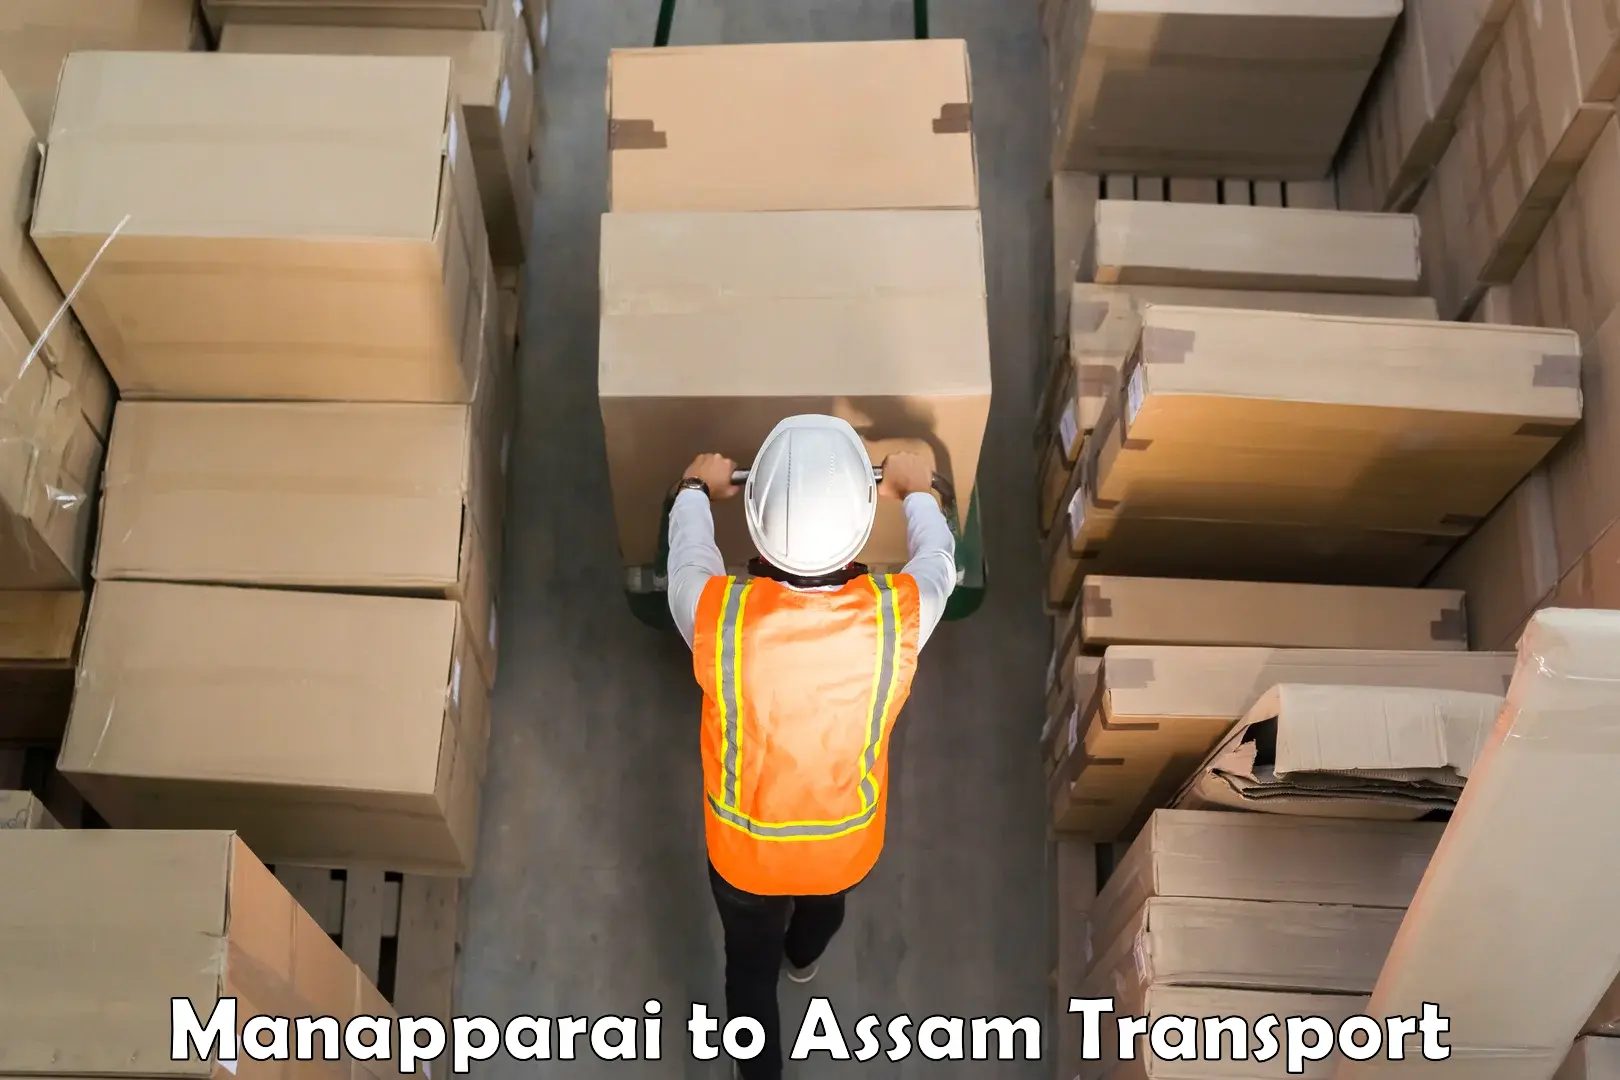 Container transport service Manapparai to Kalgachia